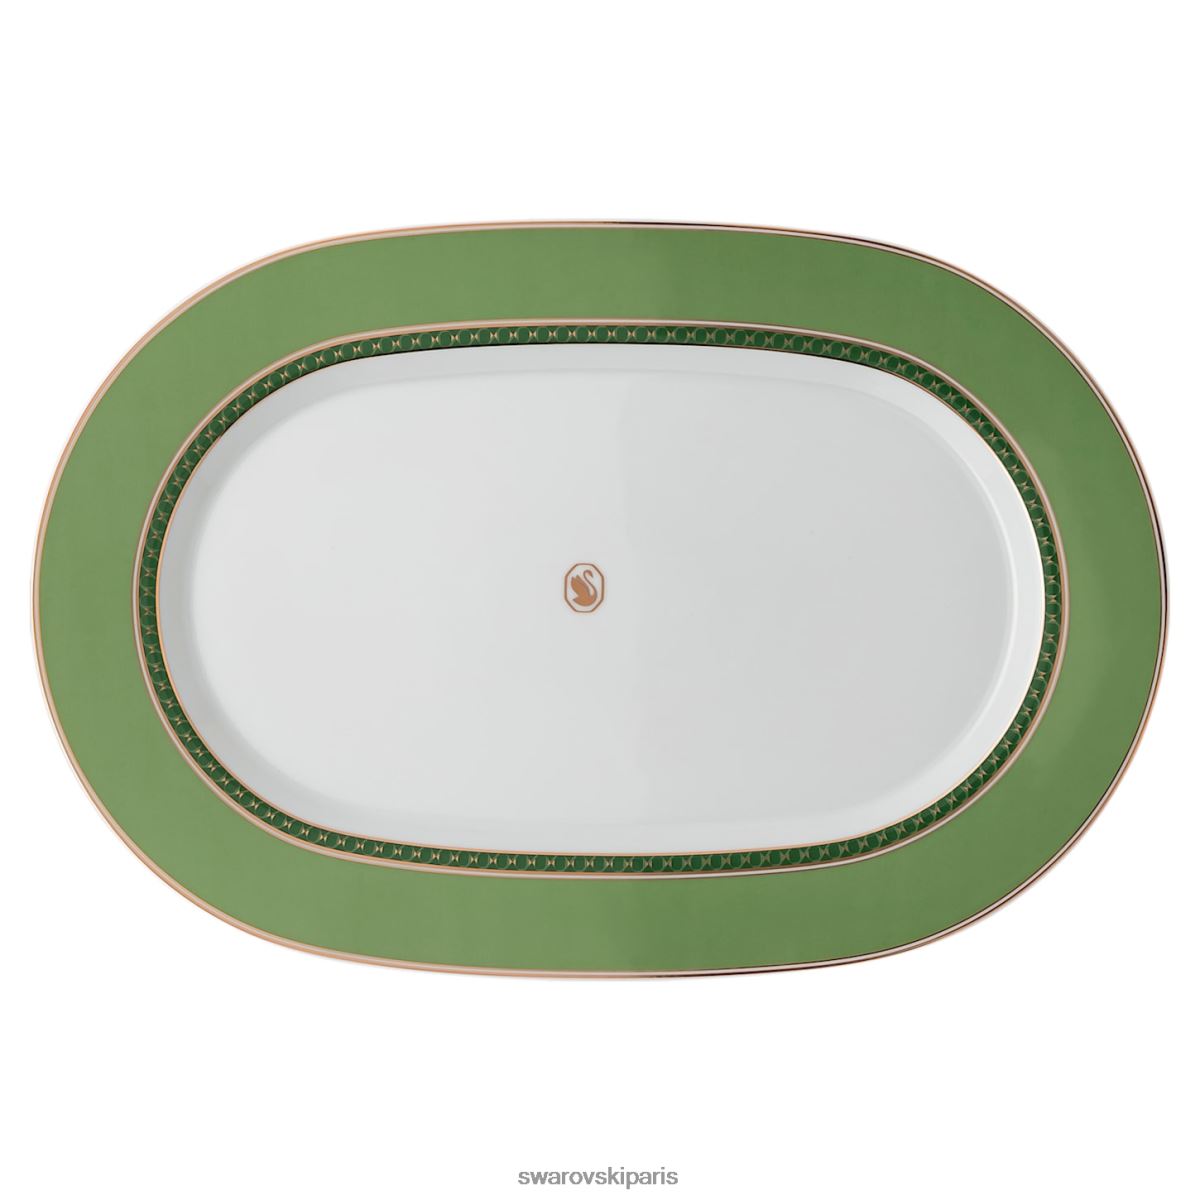 décorations Swarovski plaque de plateau signum porcelaine, vert RZD0XJ1739